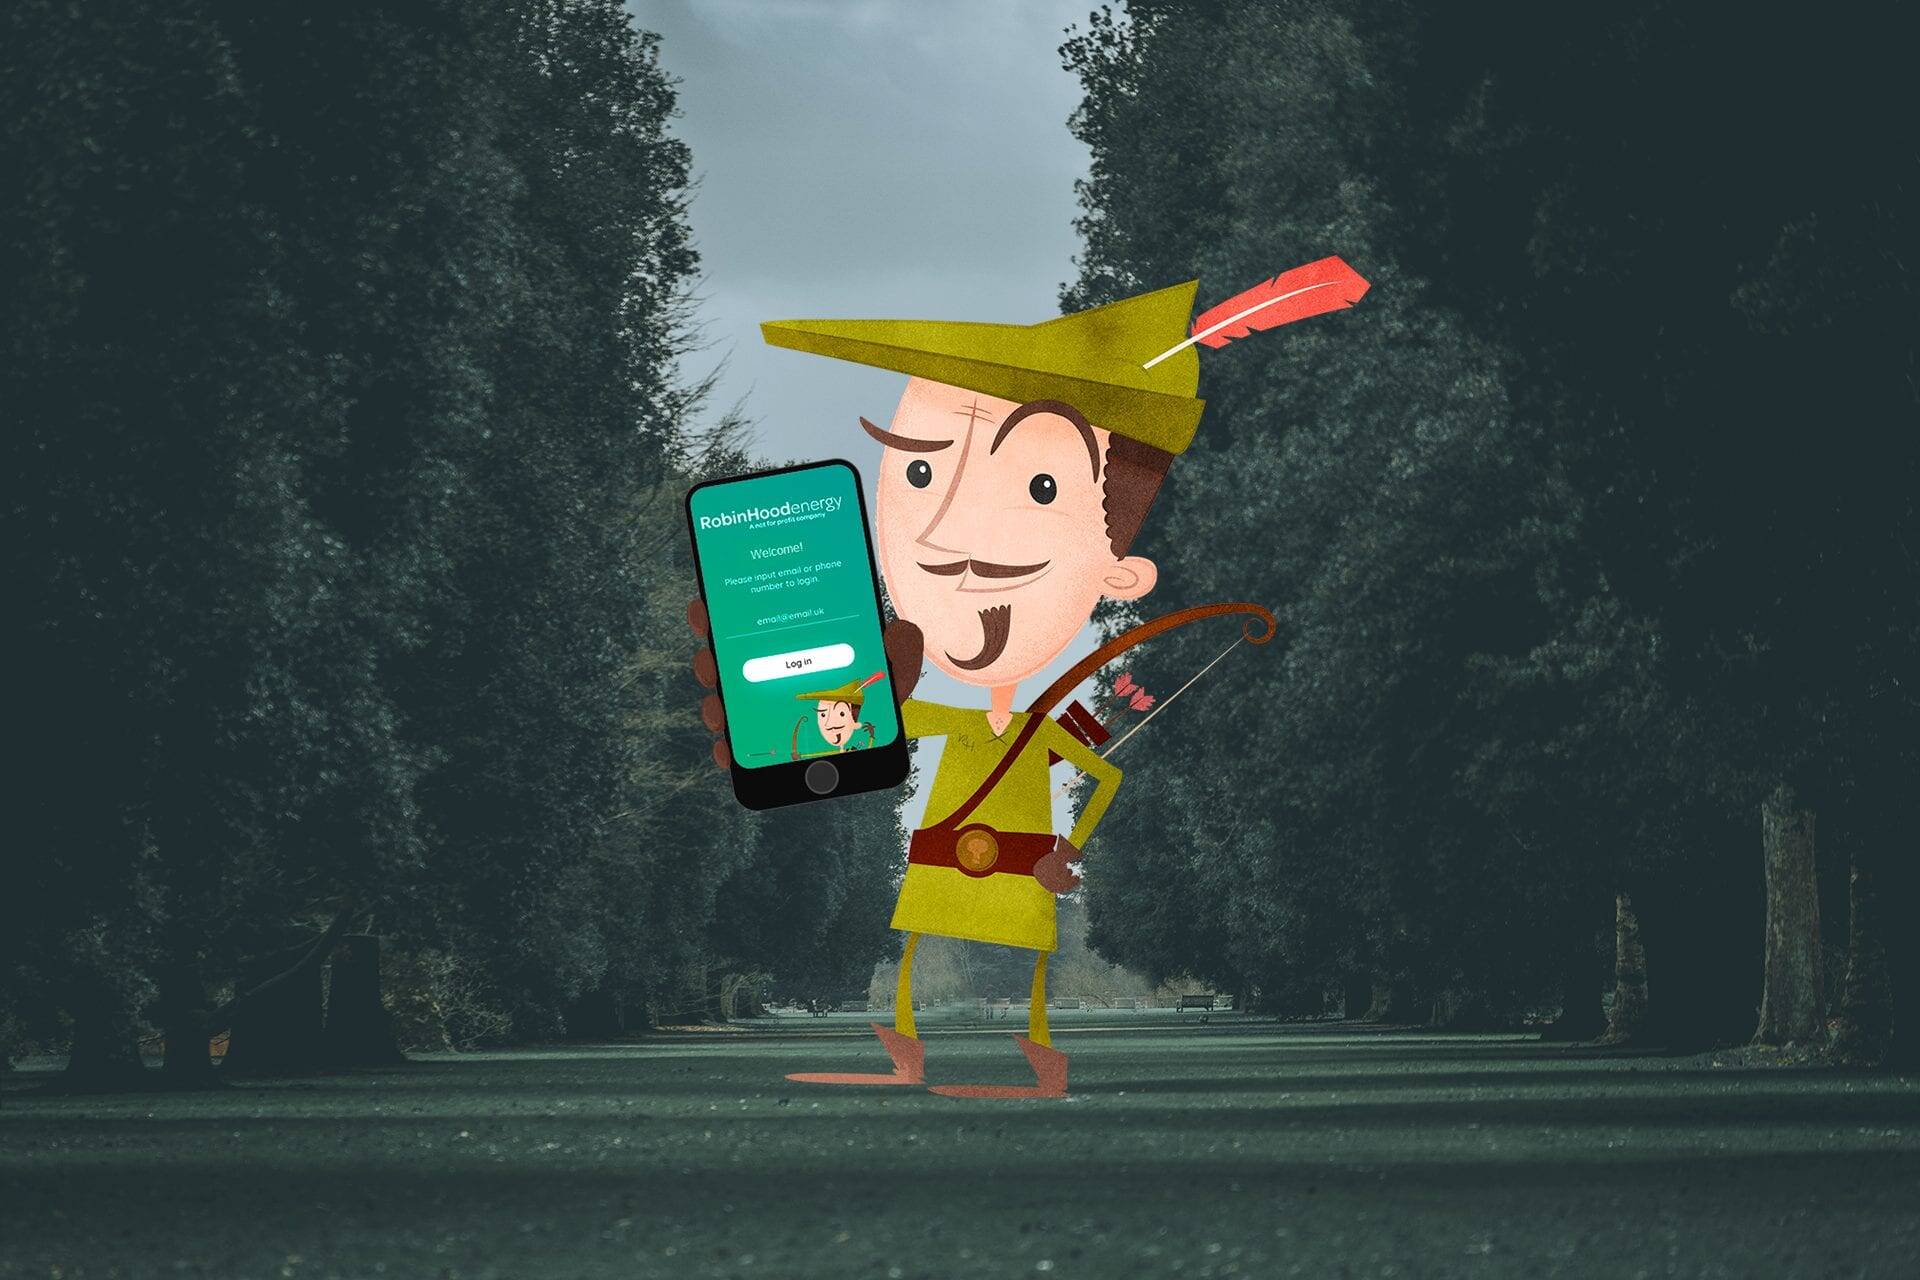 Robin Hood Energy announces customer app